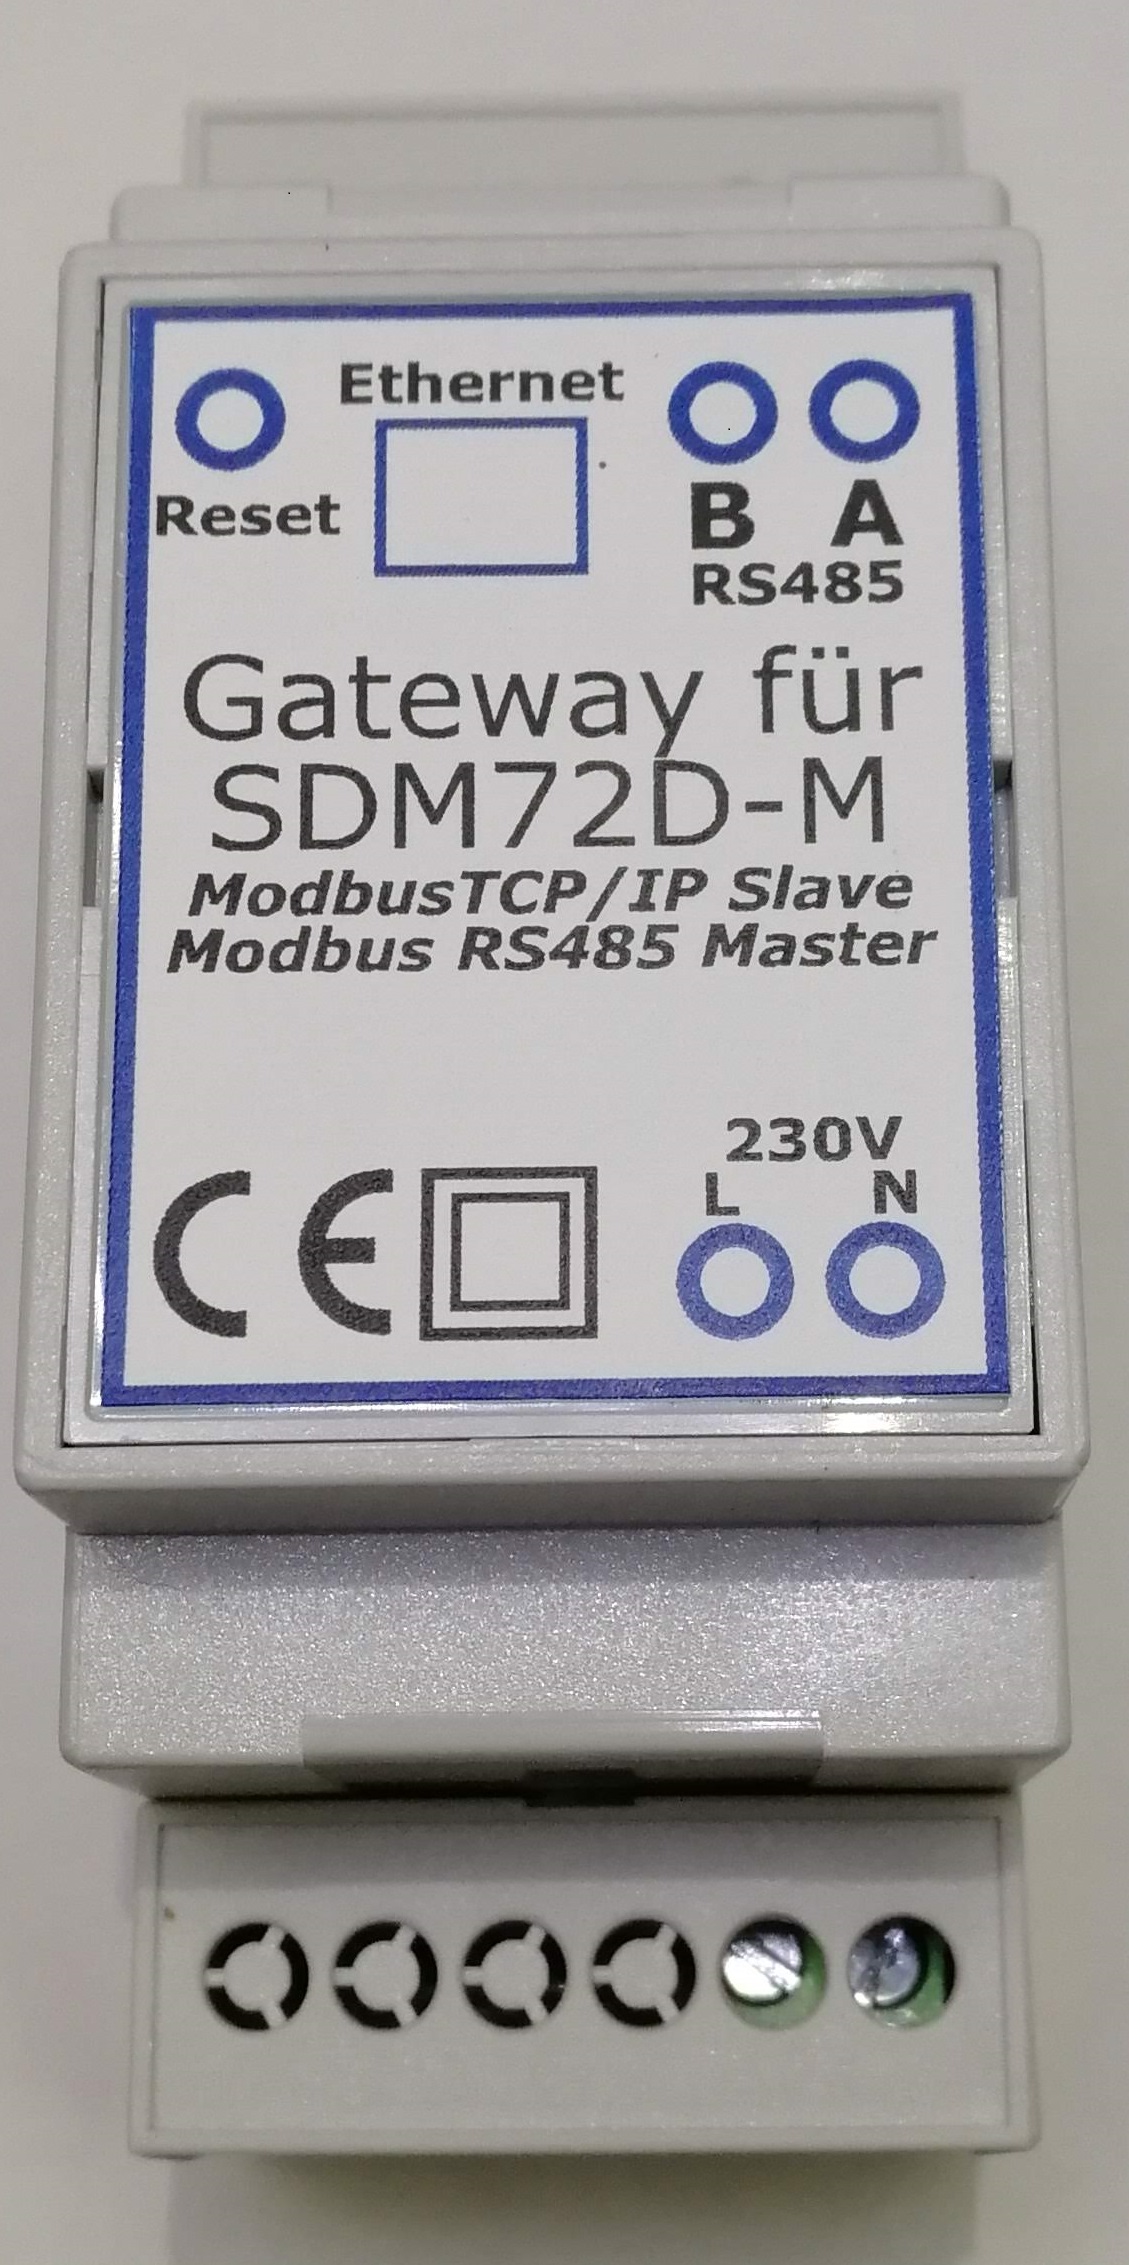 Gateway Modbus TCP/IP für SDM72D-M Zähler